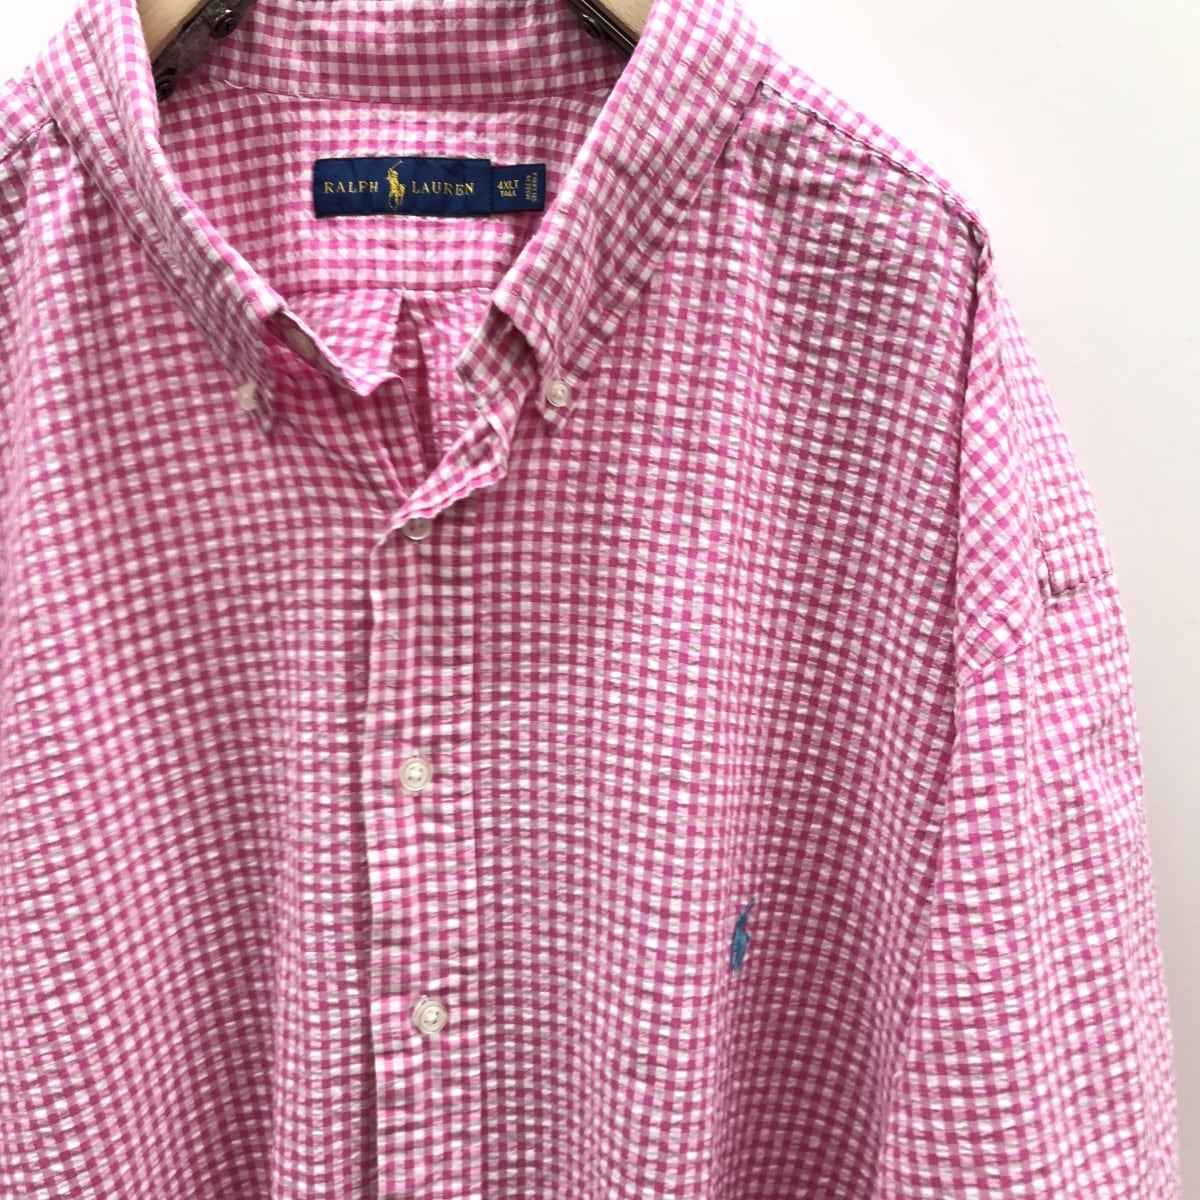 ポロラルフローレン ギンガムチェック シャツ 大きいサイズ ピンク 羽織り